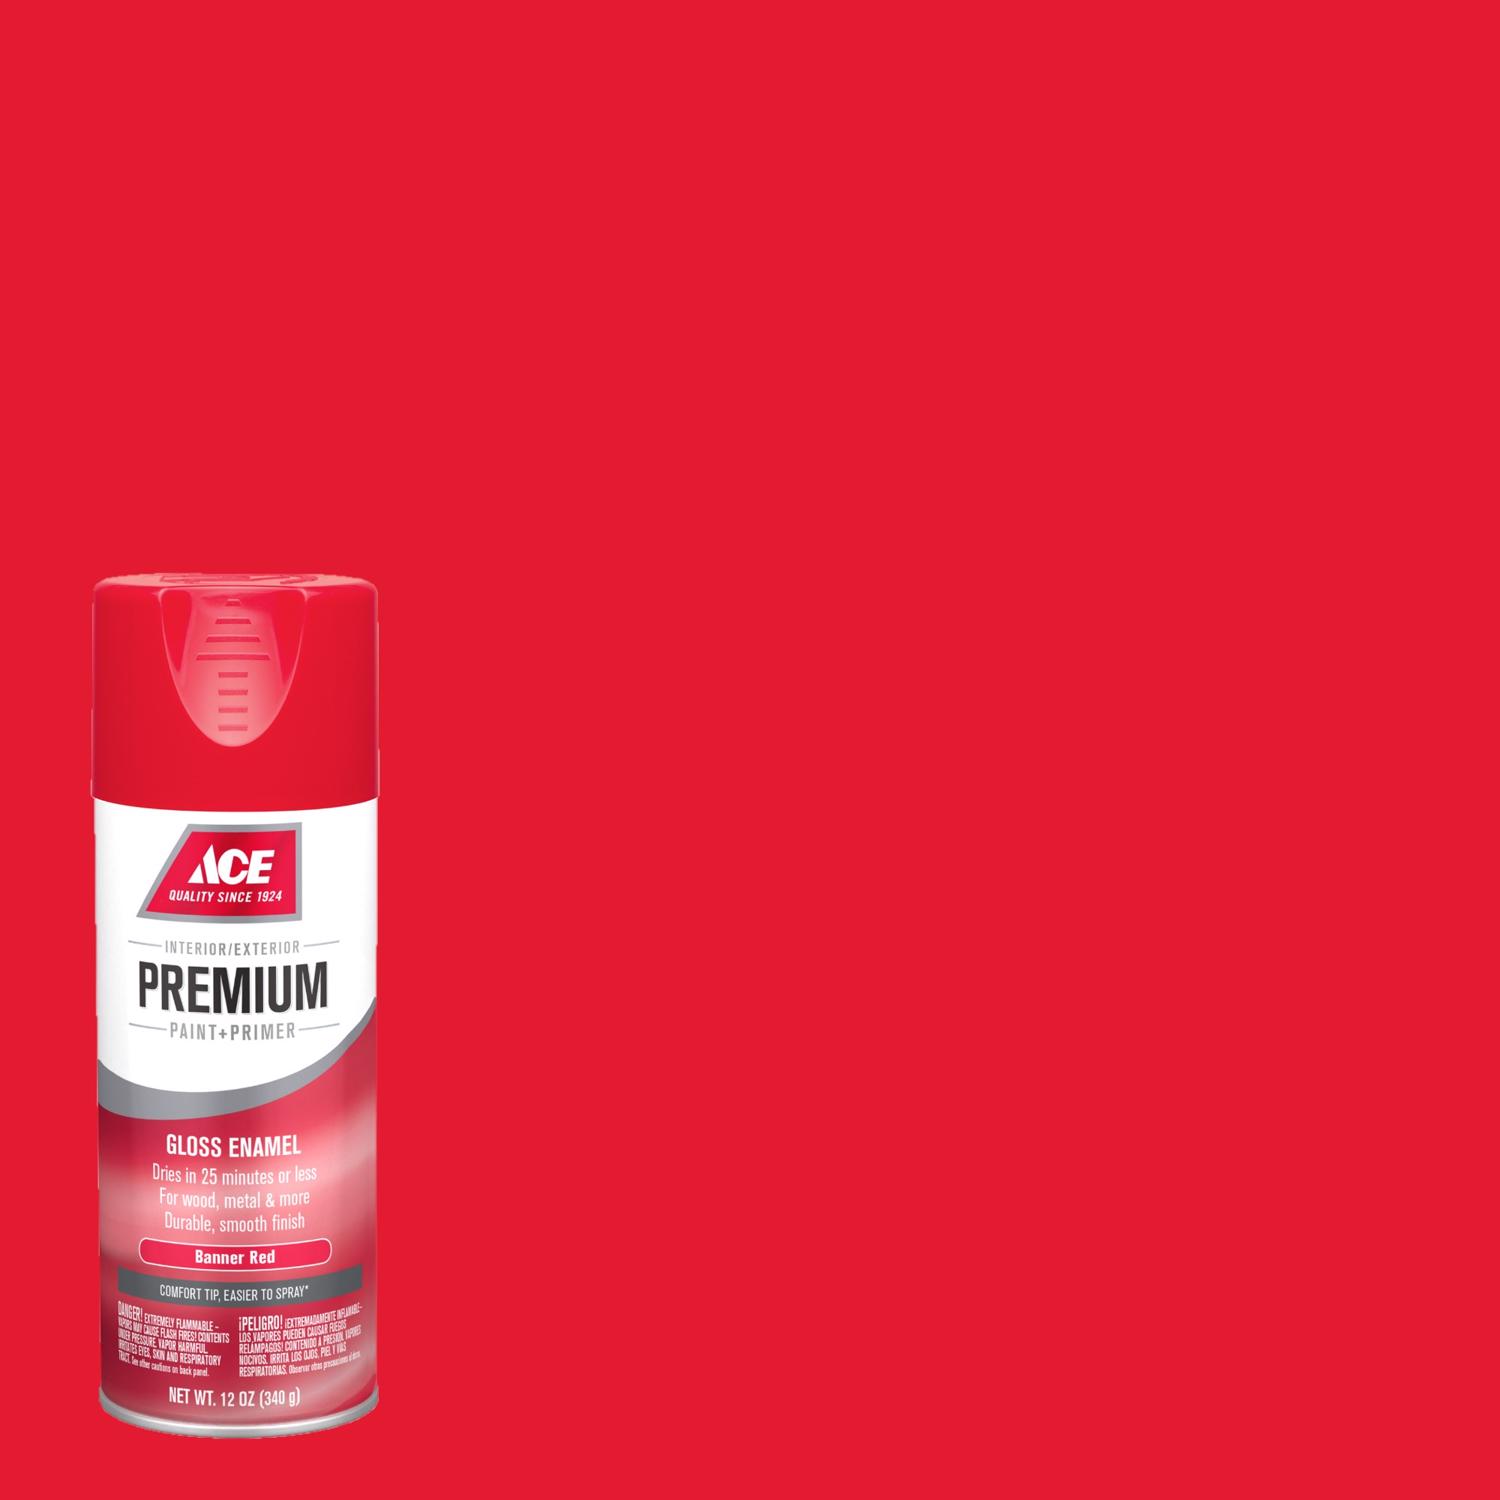 Ace Premium Gloss Banner Red Paint + Primer Enamel Spray 12 oz